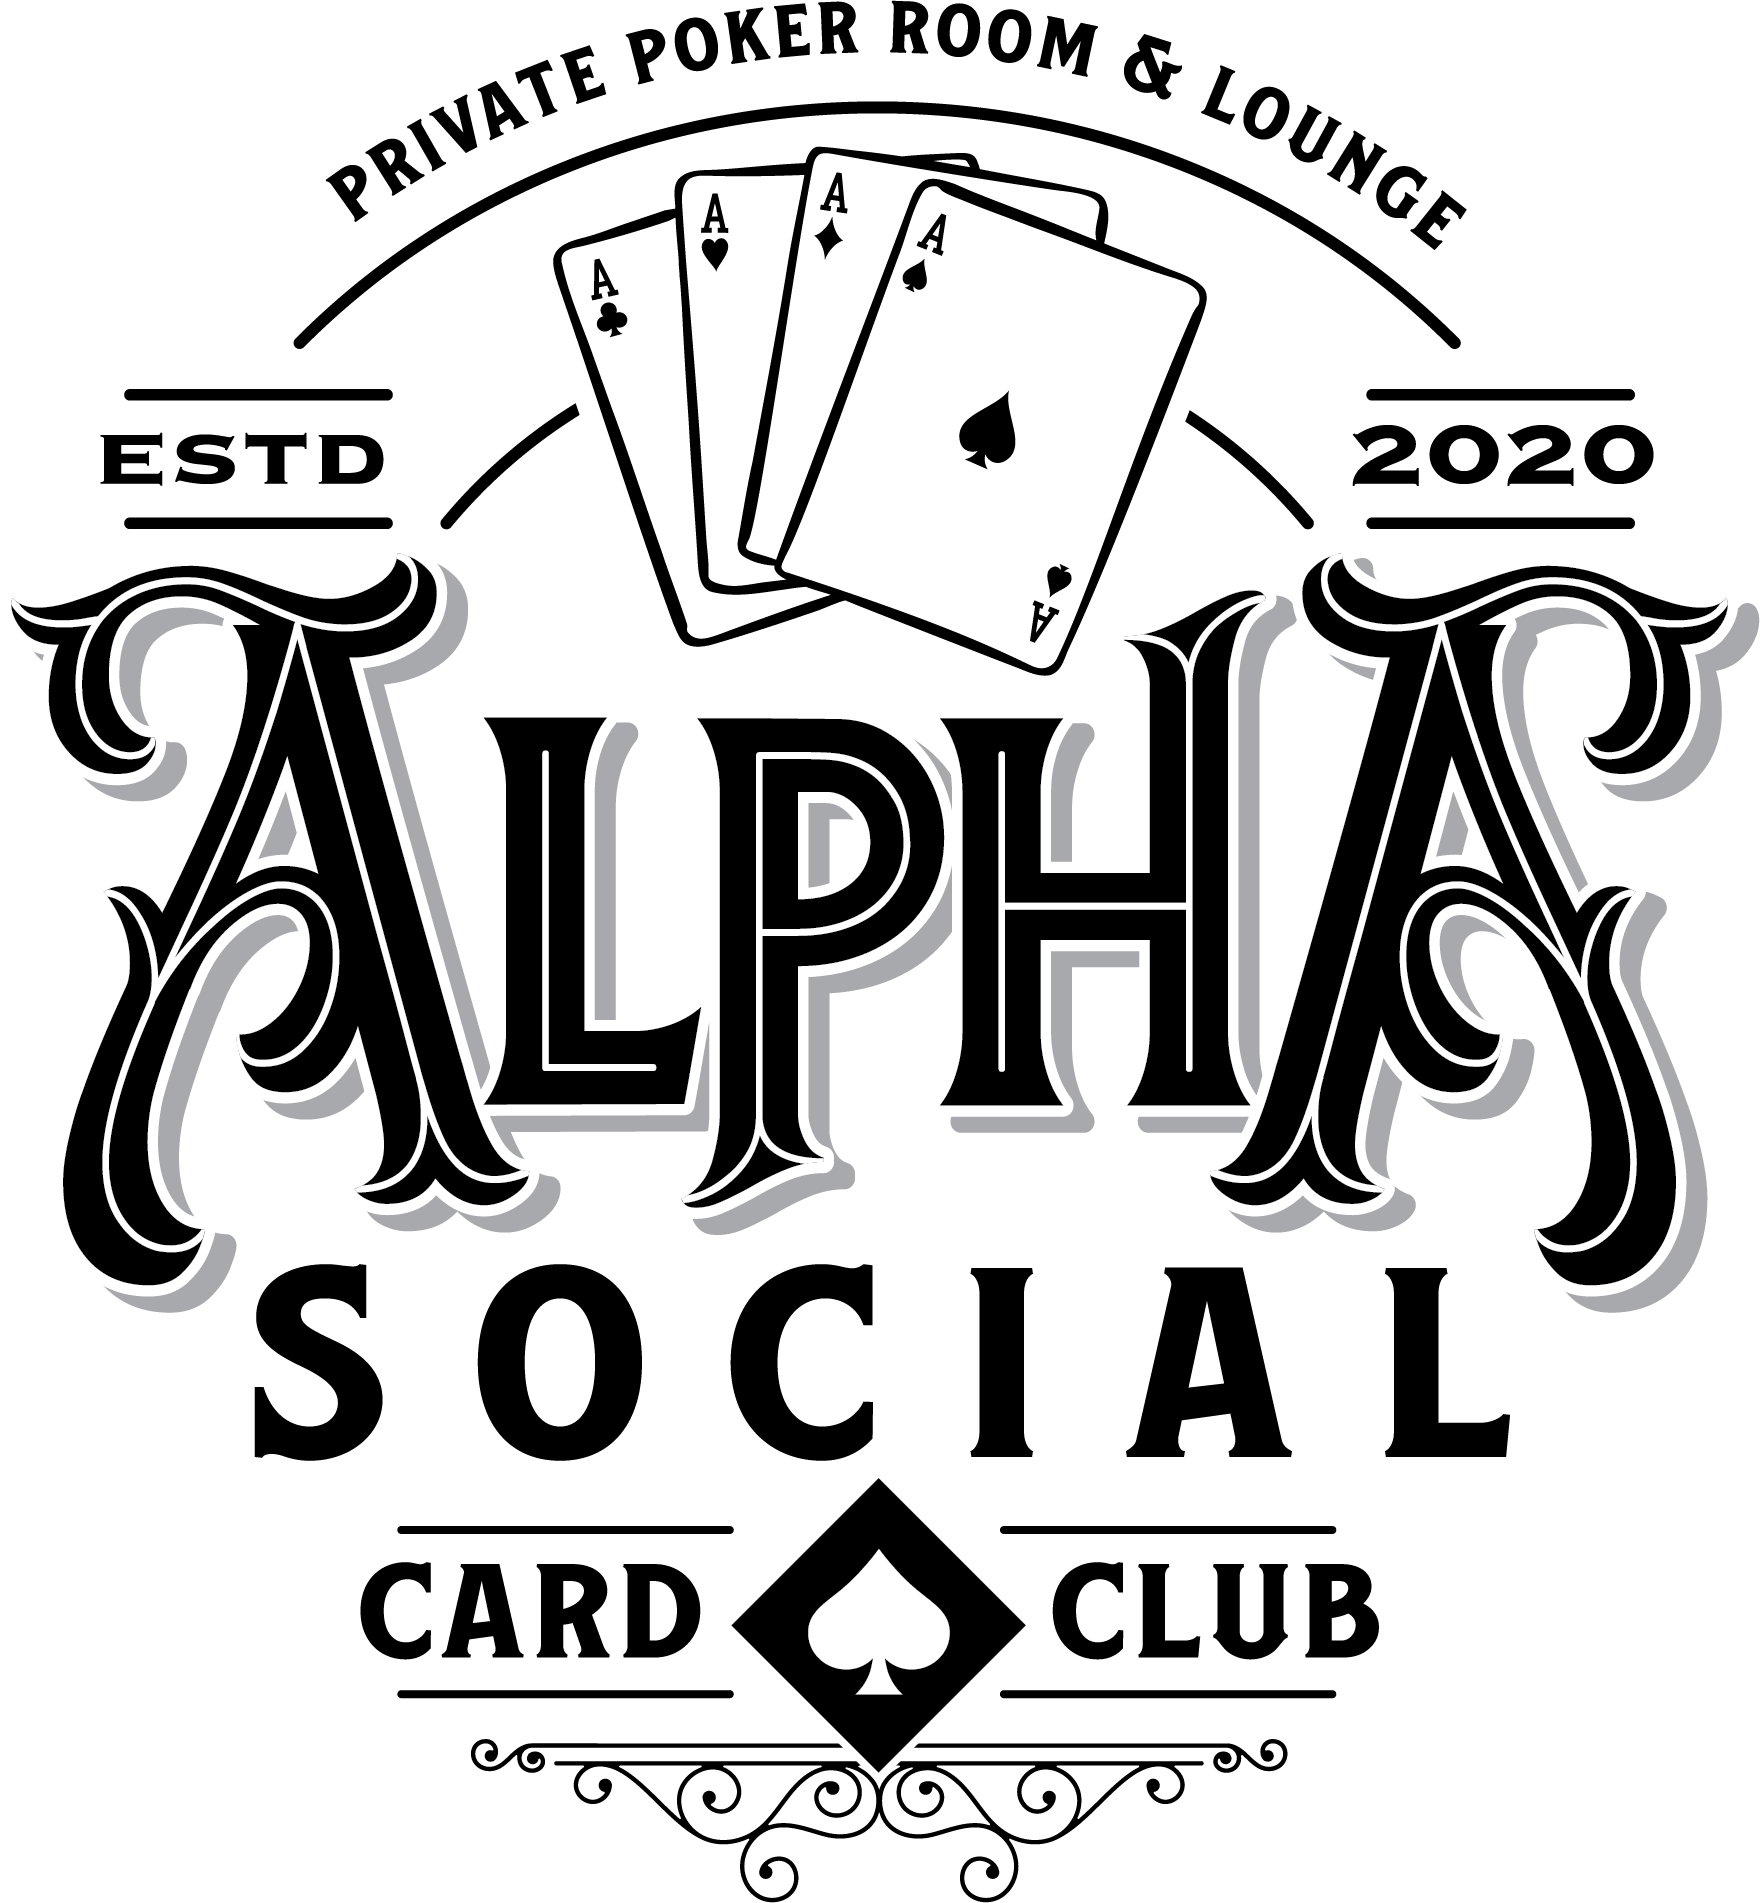 Alpha Social Card Club